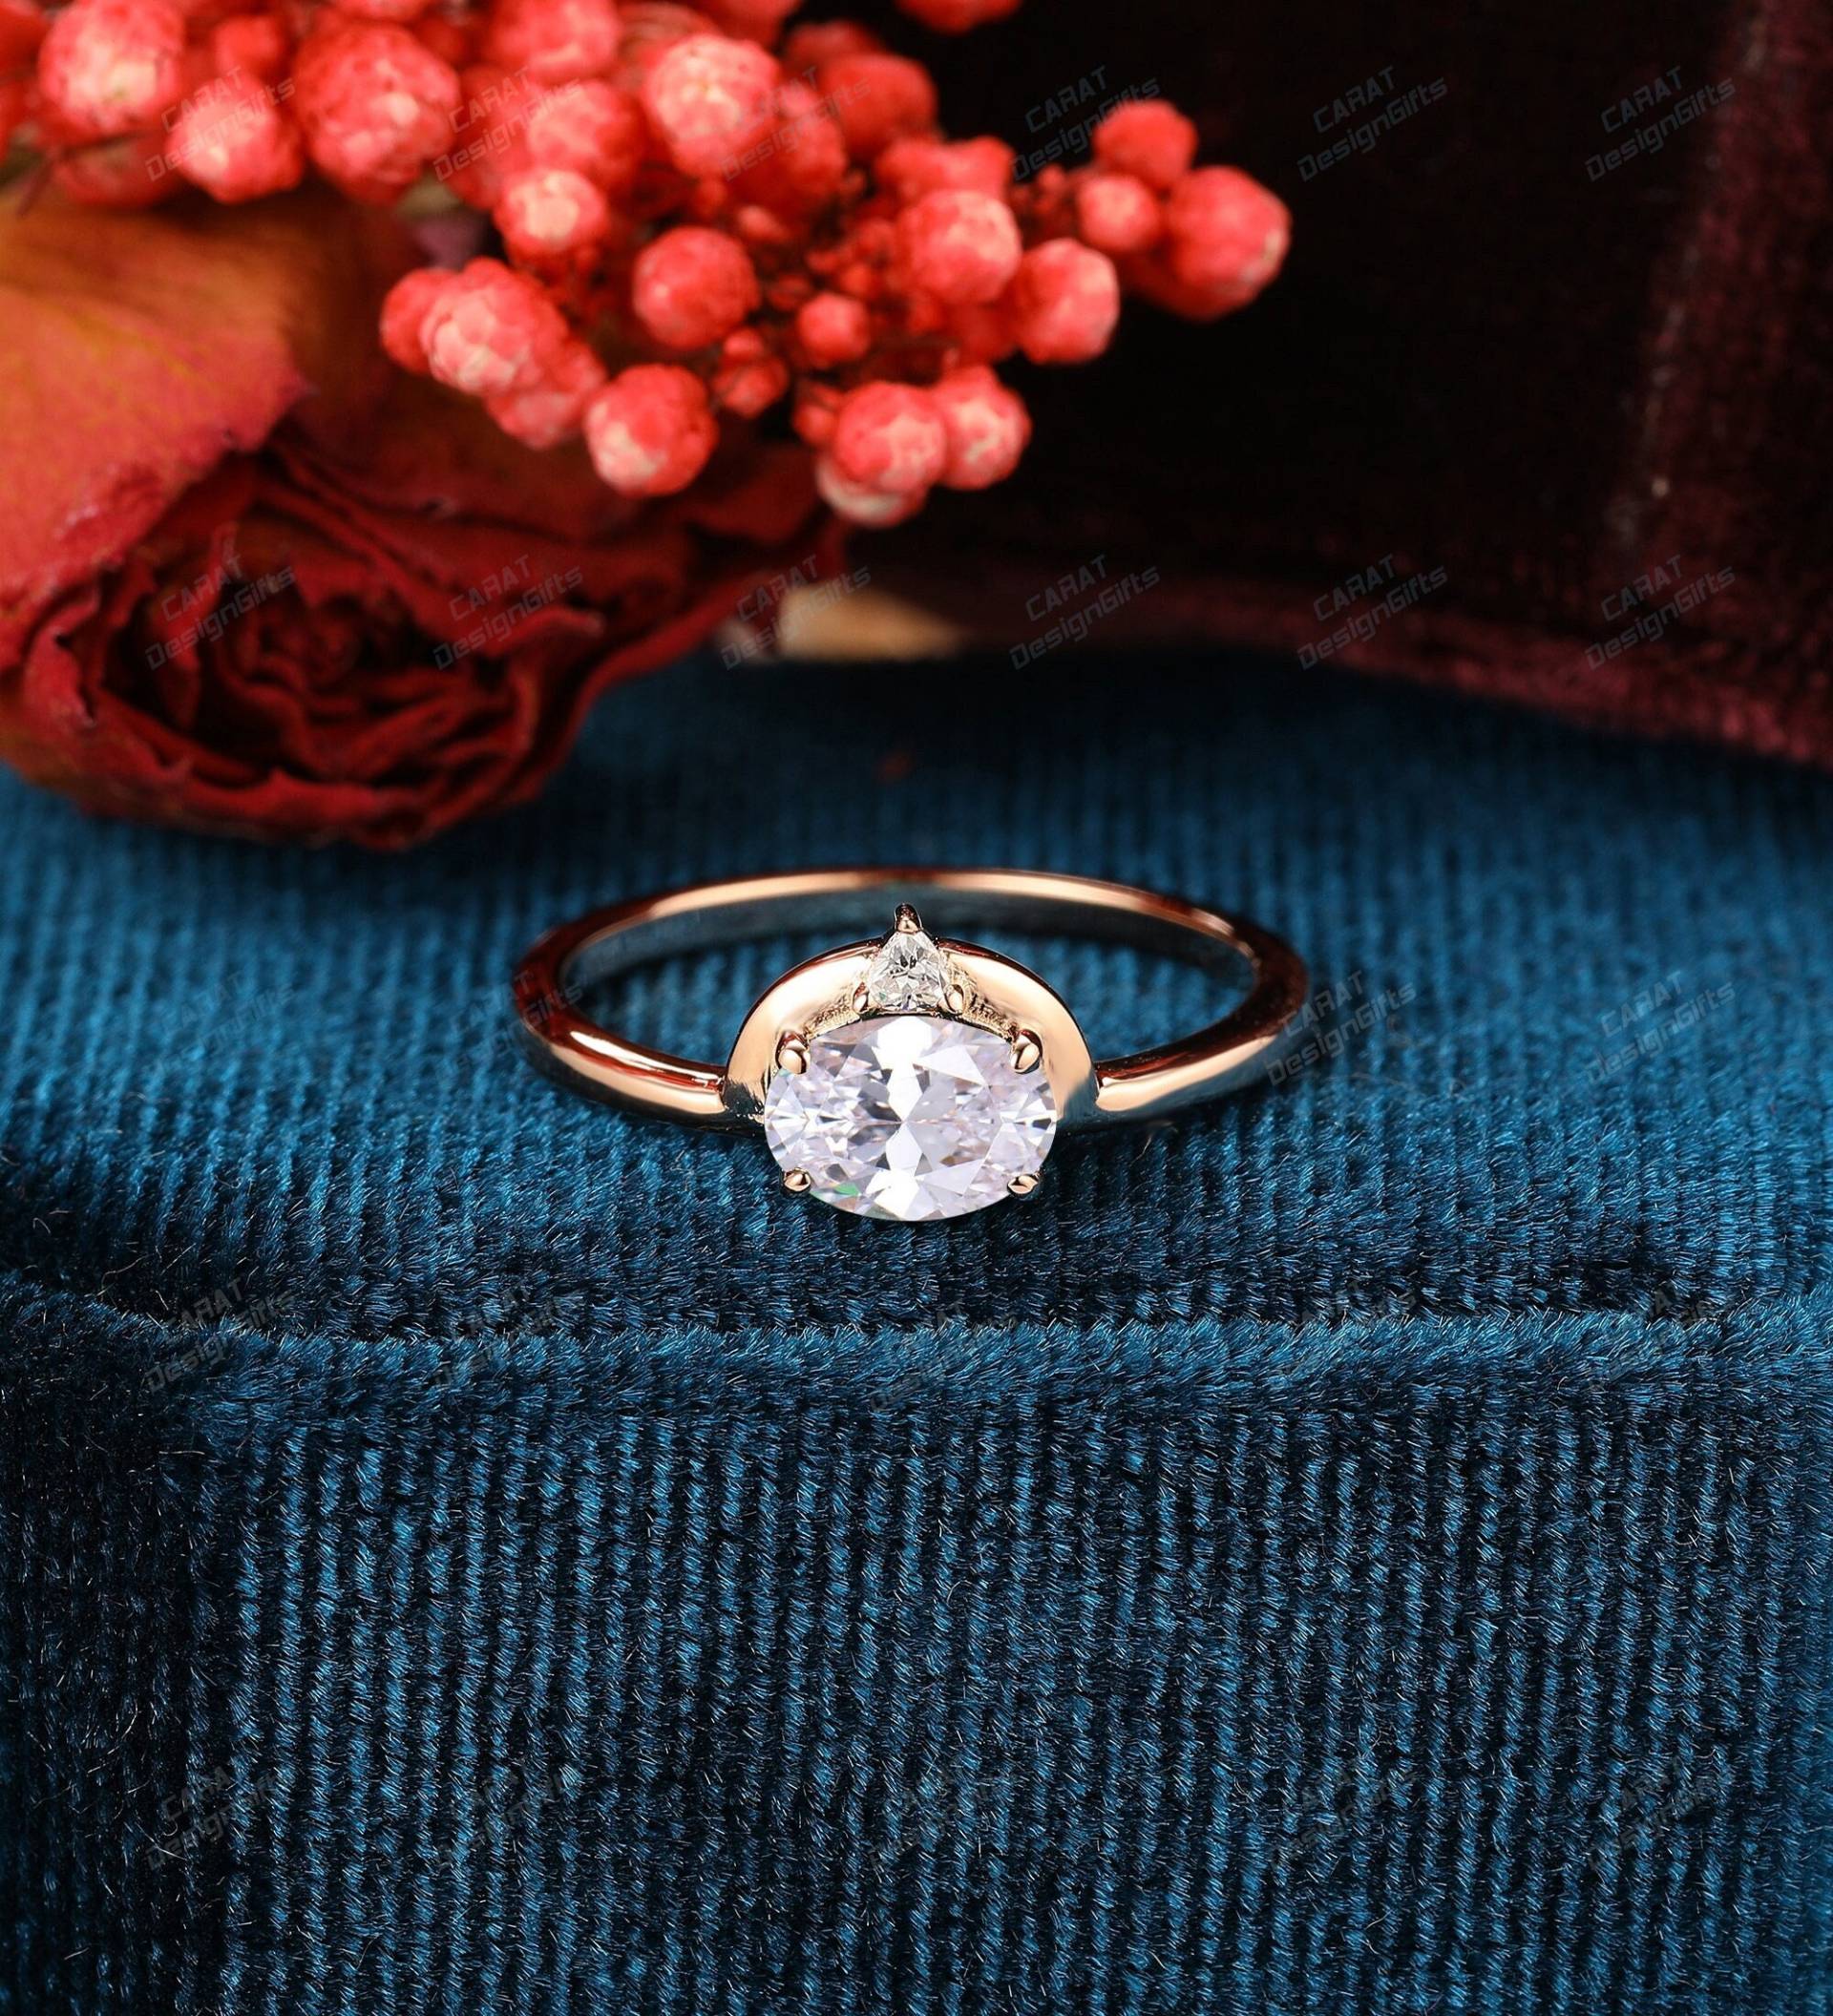 Benutzerdefinierte Ring, Oval Cut 5x7mm Moissanite Verlobungsring, Vorschlag Einzigartige Handgemachter Ring, Hochzeit Versprechen Ring, Ring Für von CaratDesignGifts